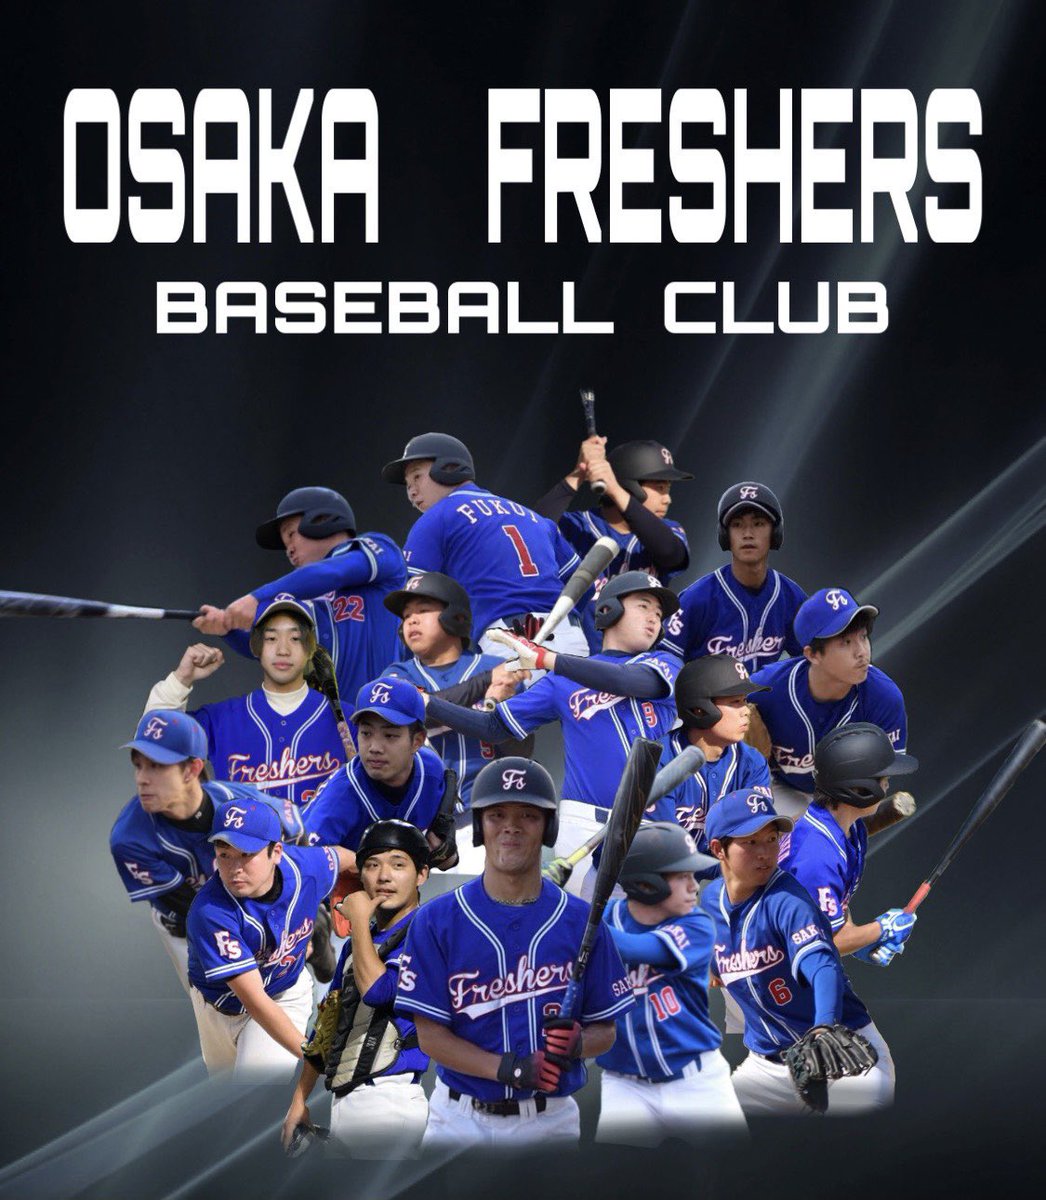 大阪freshers 大阪草野球チーム Freshers1439 Twitter